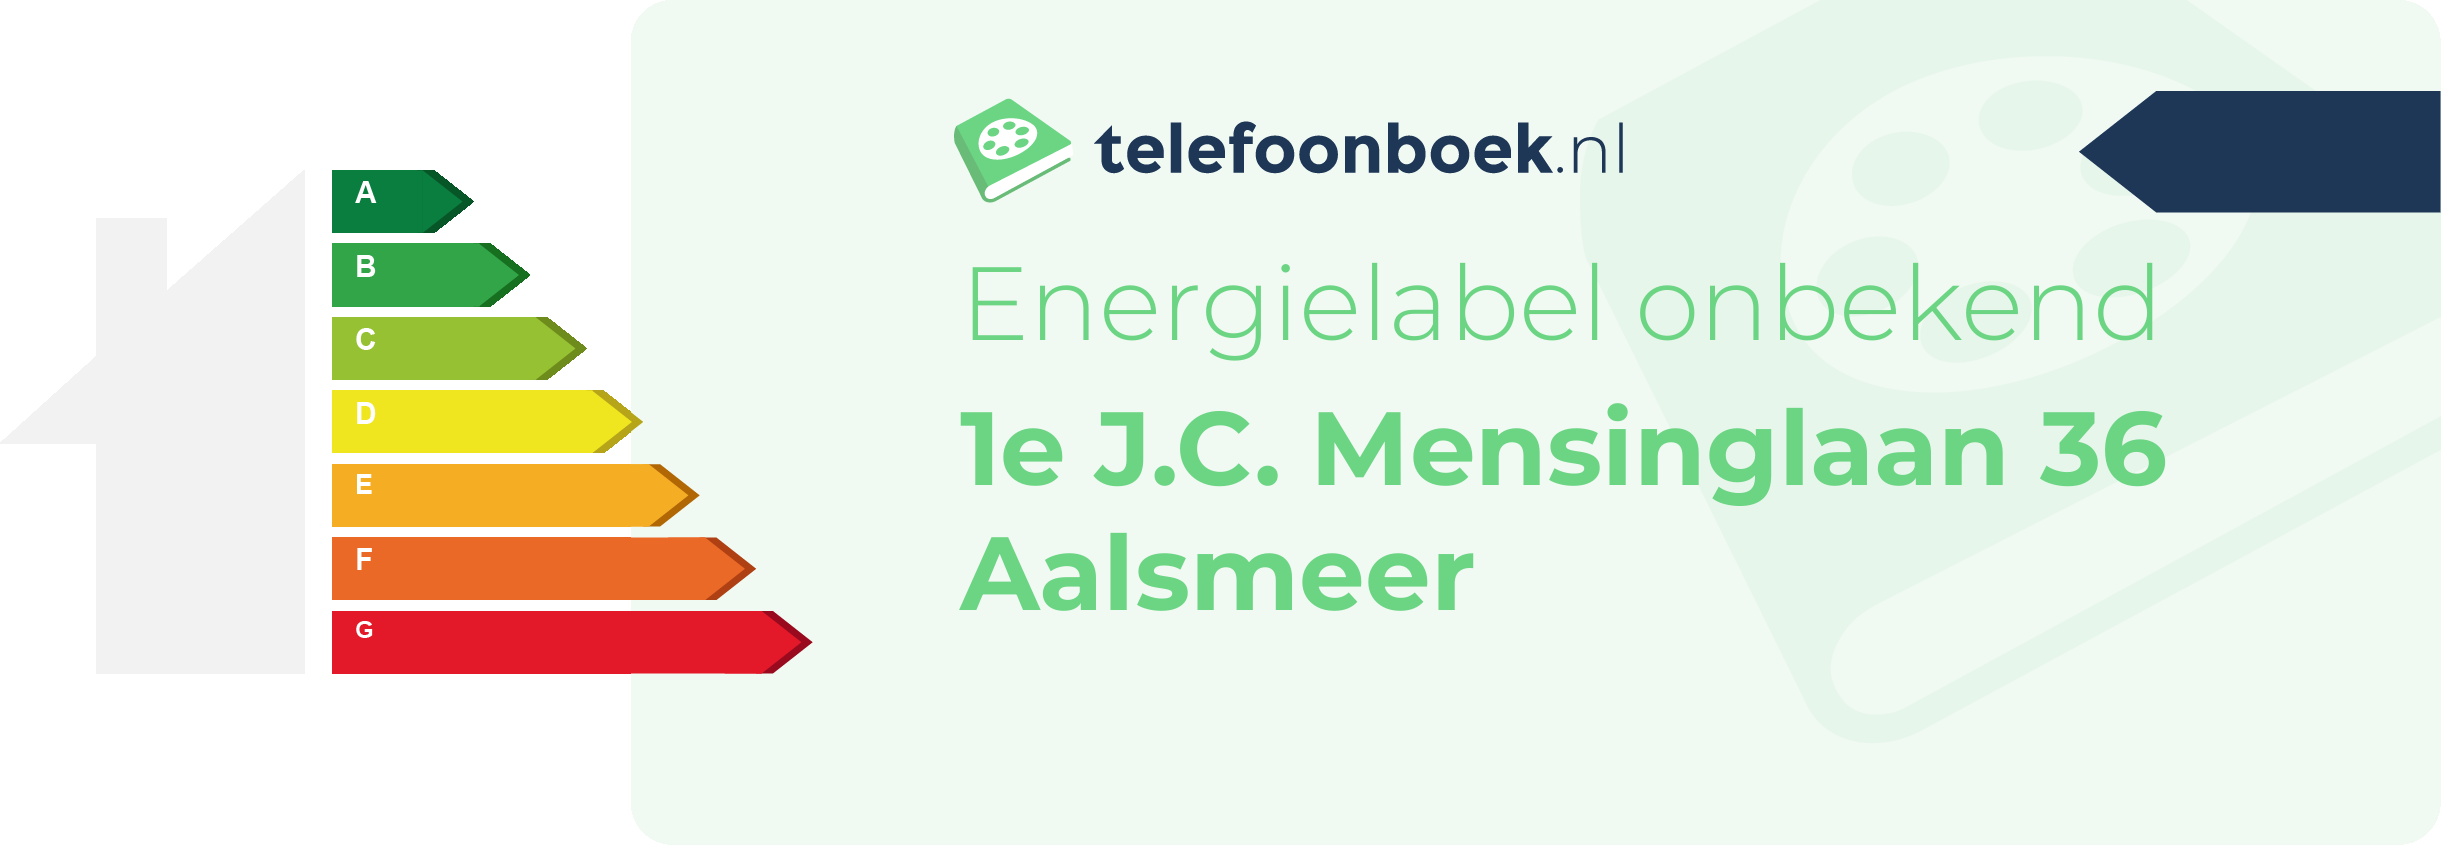 Energielabel 1e J.C. Mensinglaan 36 Aalsmeer